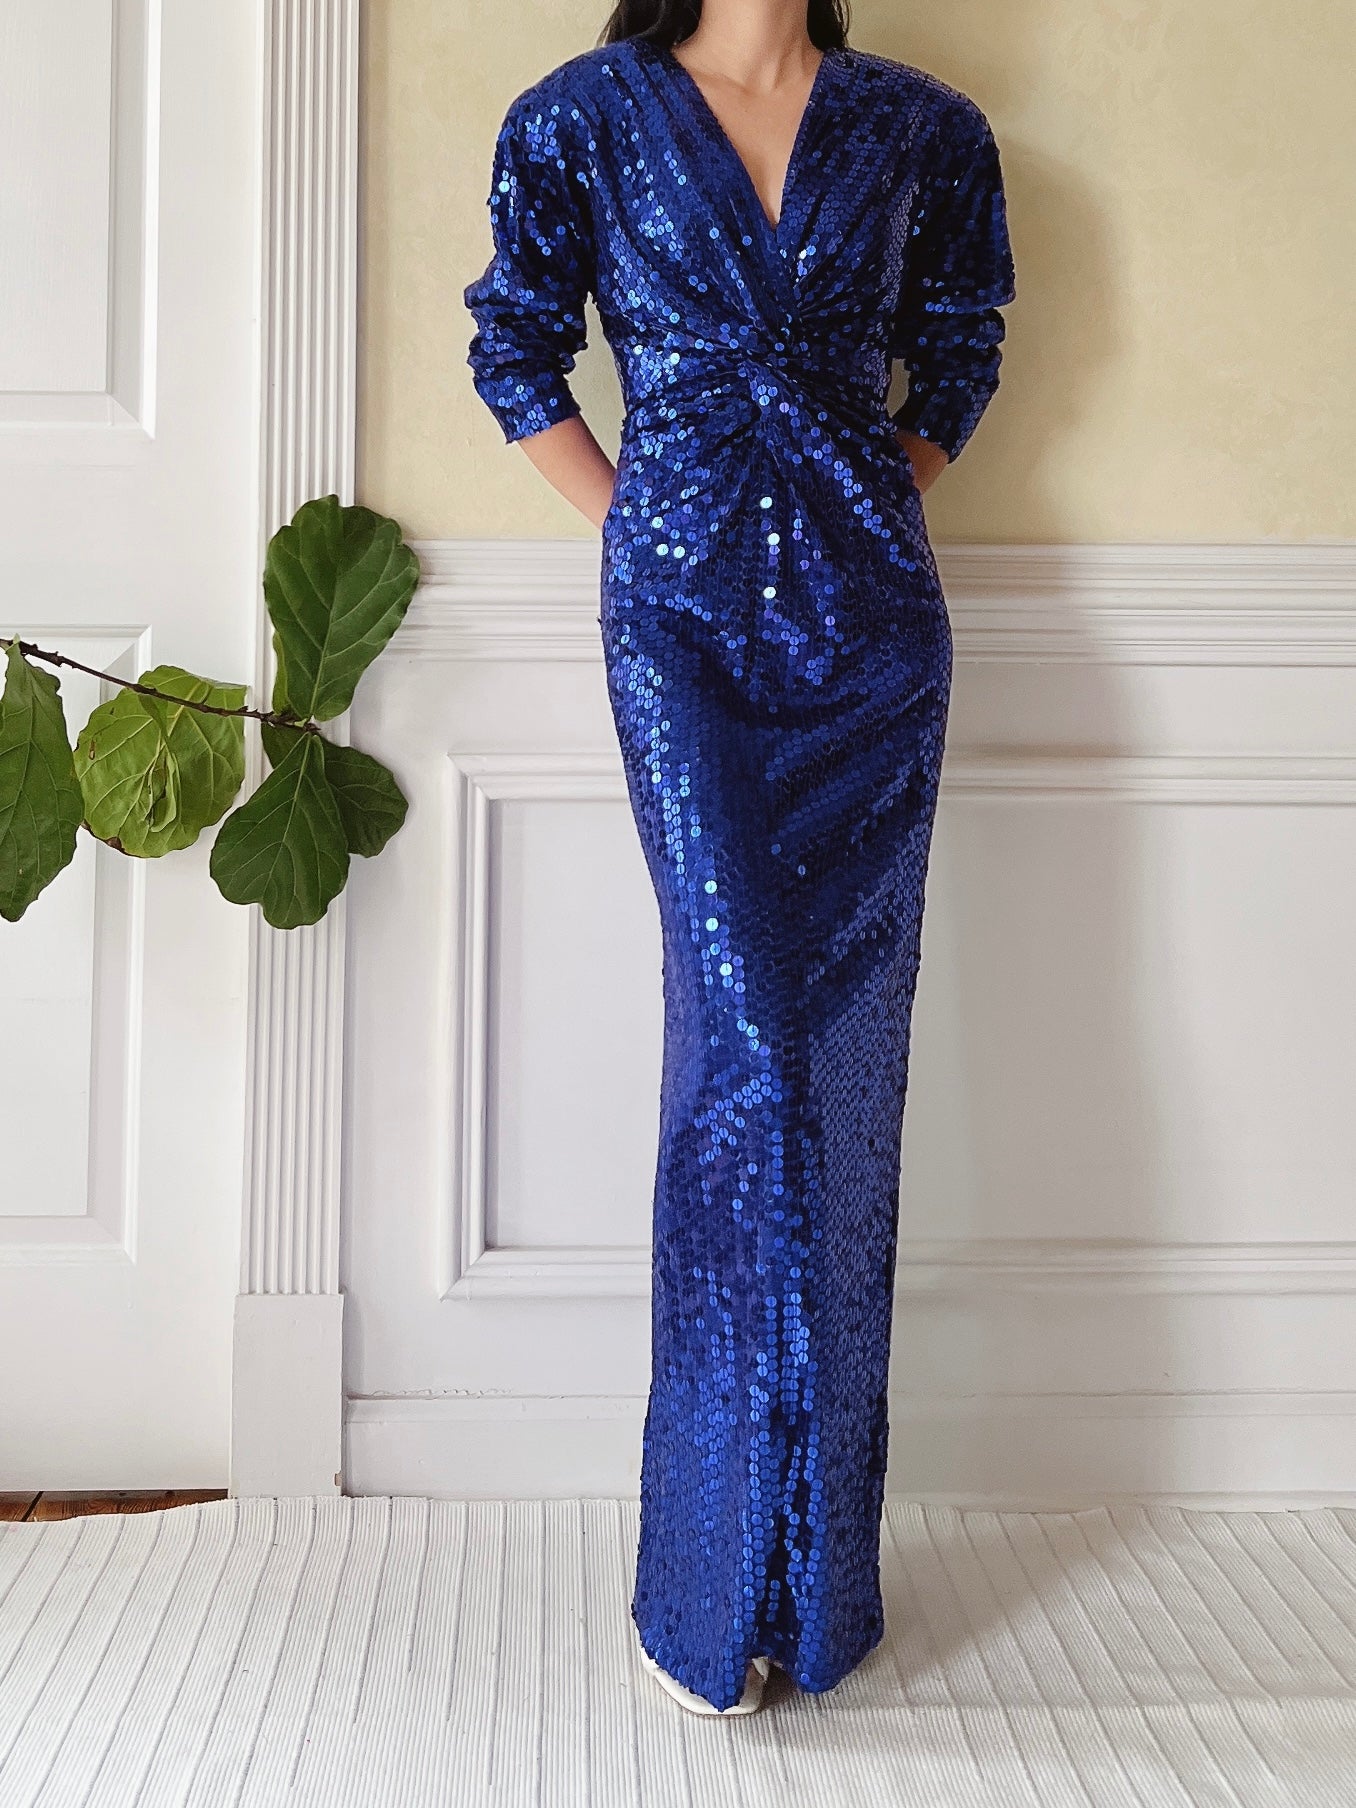 Vintage Electric Blue Sequins Gown - S/M